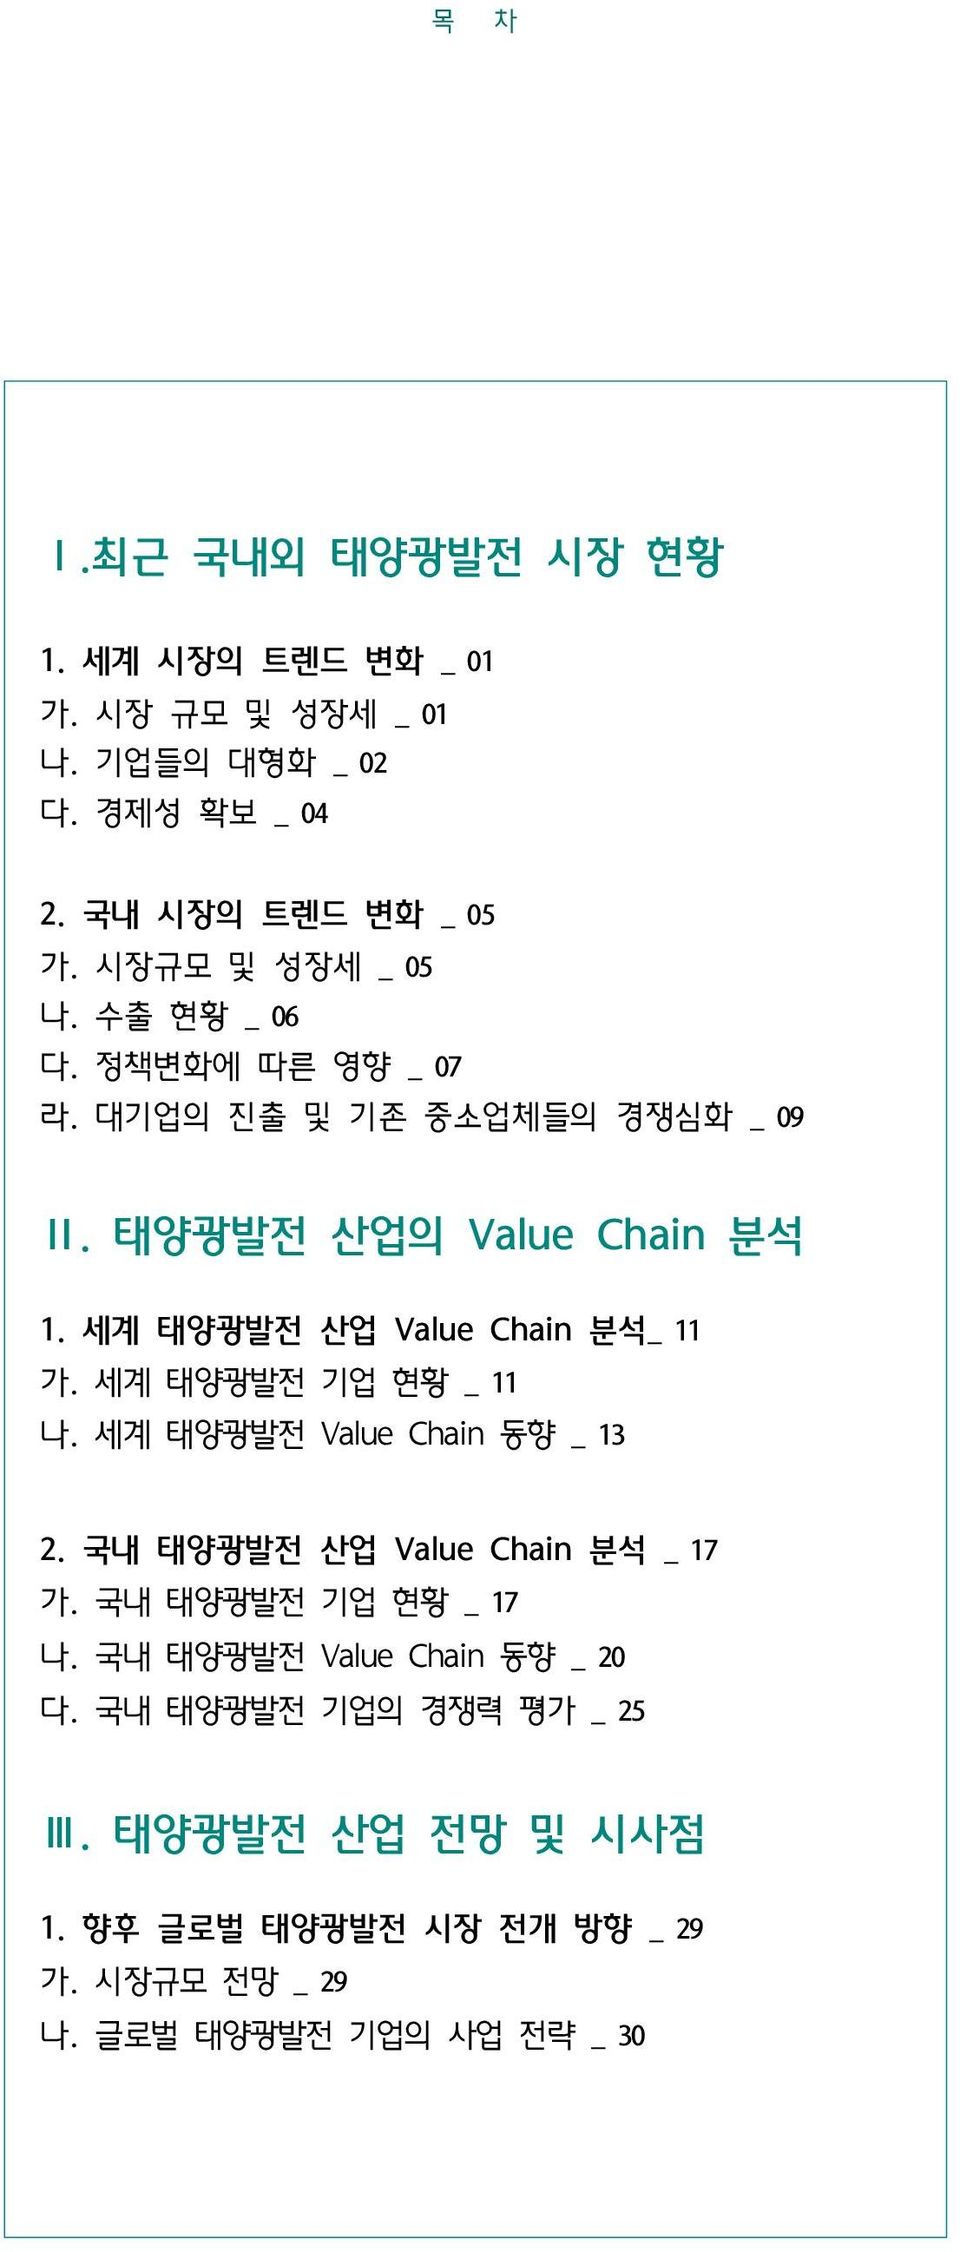 세계 태양광발전 산업 Value Chain 분석_ 11 가. 세계 태양광발전 기업 현황 _ 11 나. 세계 태양광발전 Value Chain 동향 _ 13 2. 국내 태양광발전 산업 Value Chain 분석 _ 17 가.